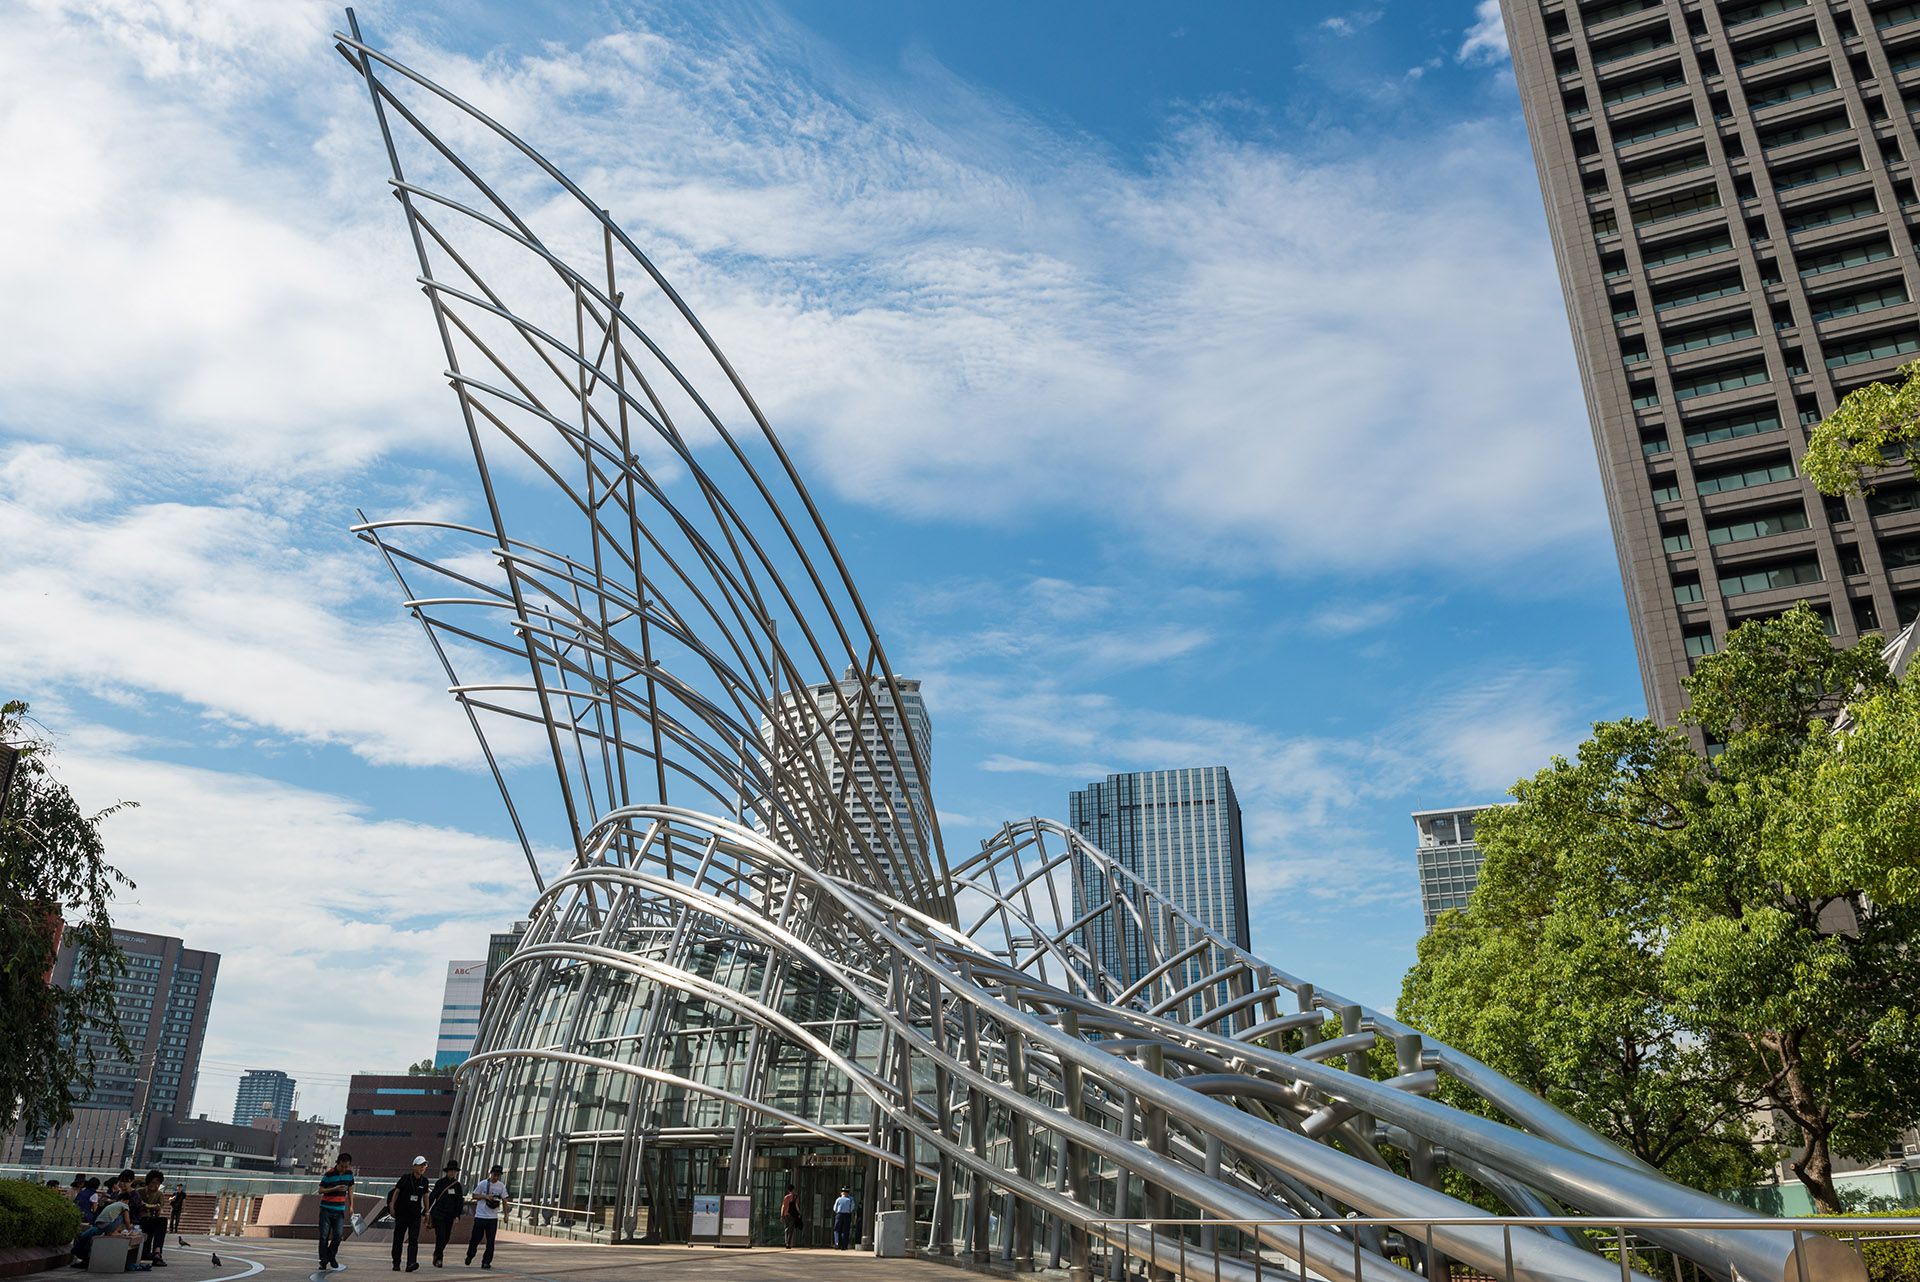 Museo Nacional de Arte, Osaka. Otra obra colosal de Pelli. Todo el museo fue diseñado por él y también sugirió que la estructura sea un diseño visible. (Shutterstock)